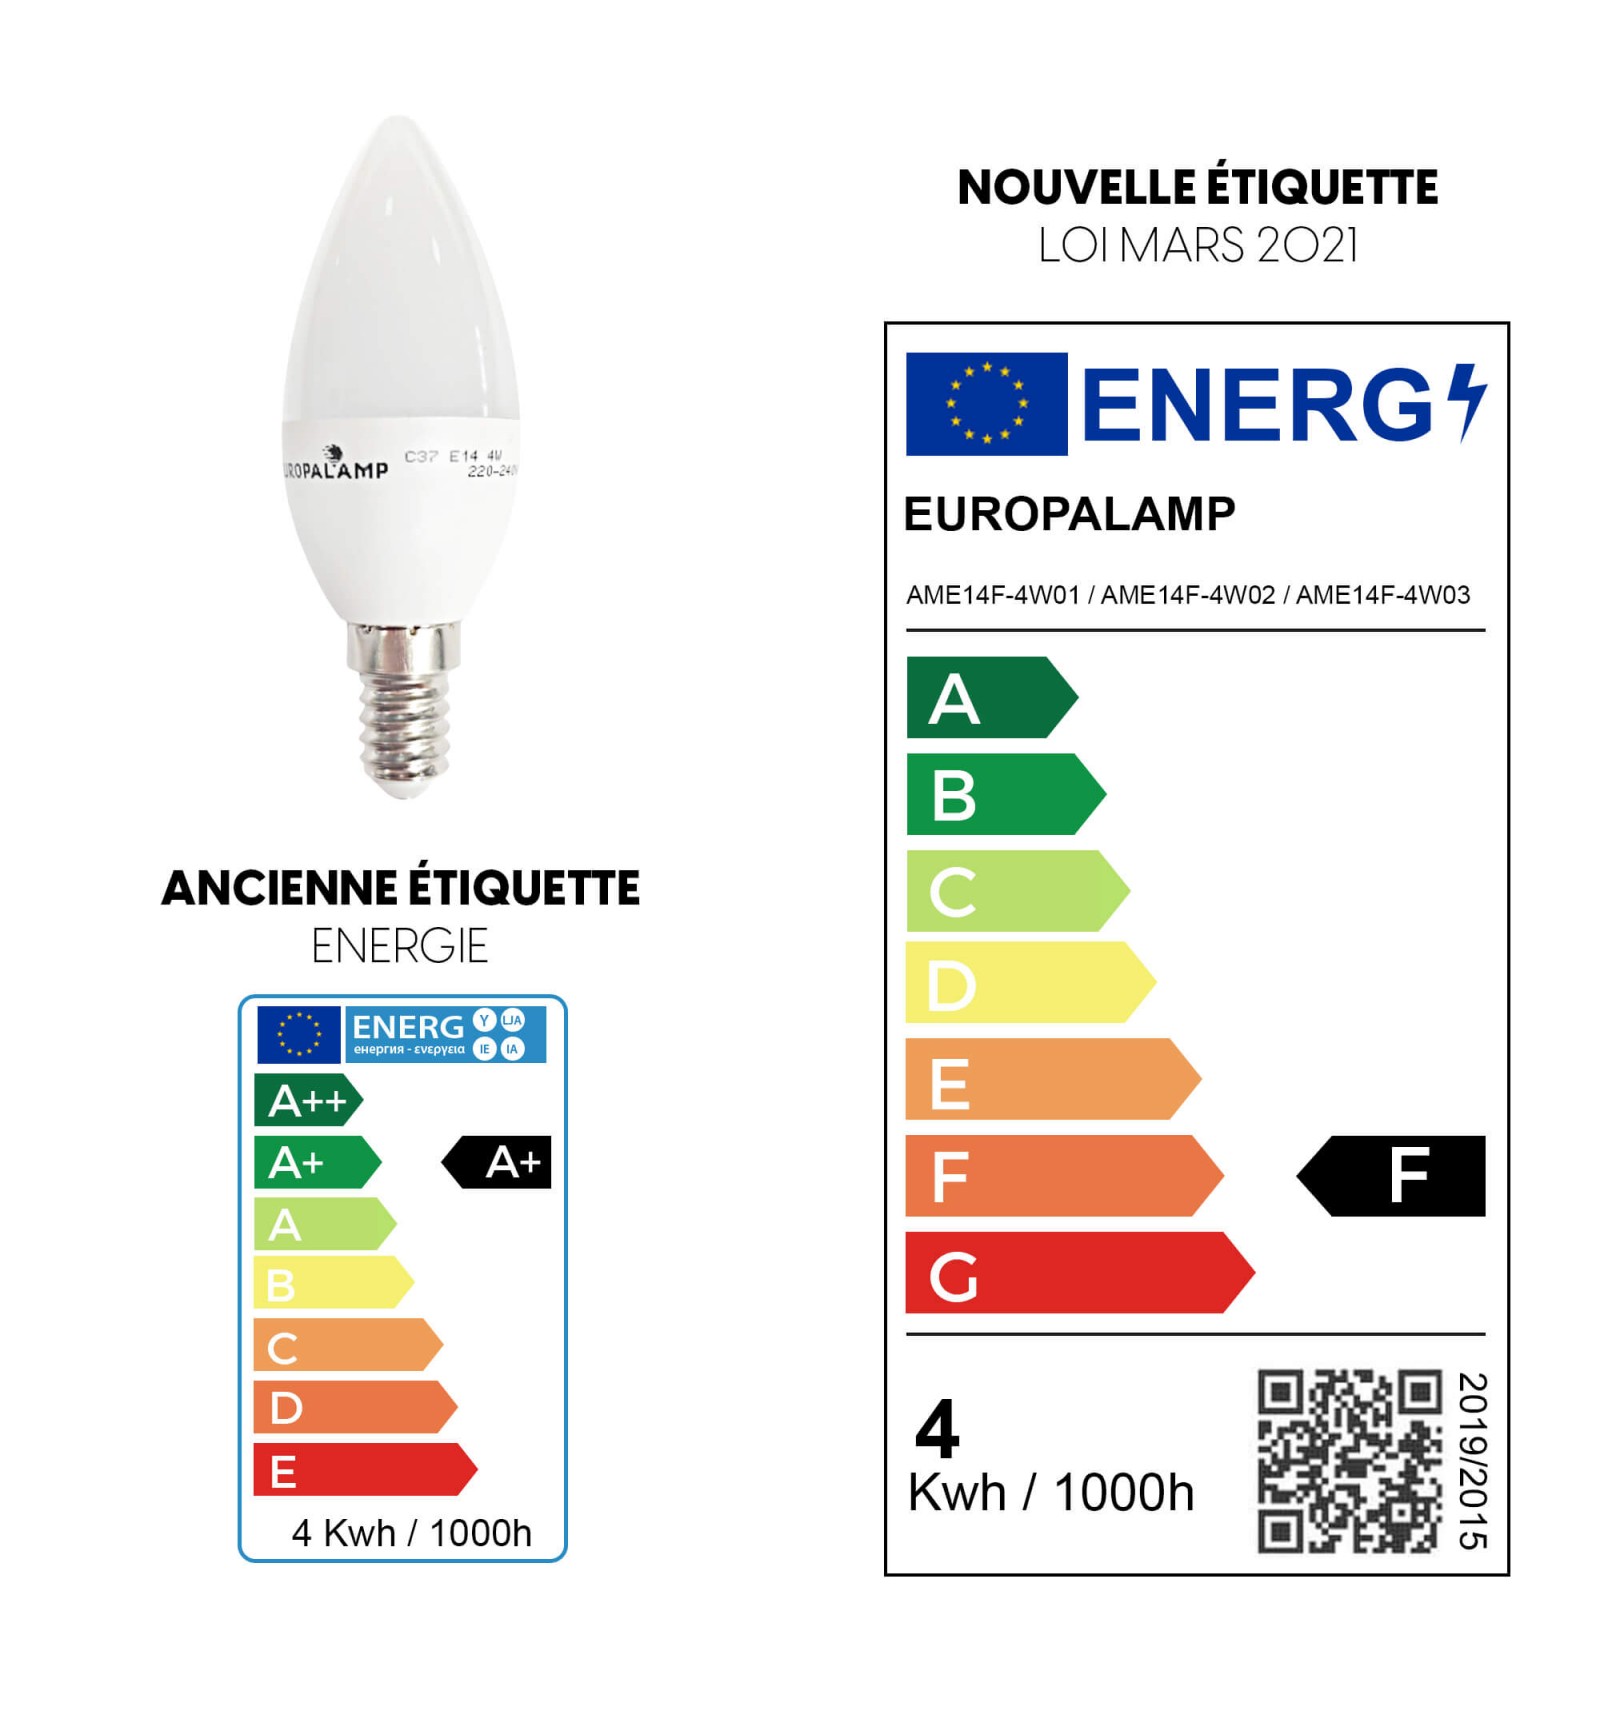 E14 KEJA LED Lampes, Eclairage LED, Lampe, Marque: KEJA, pour les  revendeurs, A-stock - Allemagne, Produits Neufs - Plate-forme de vente en  gros